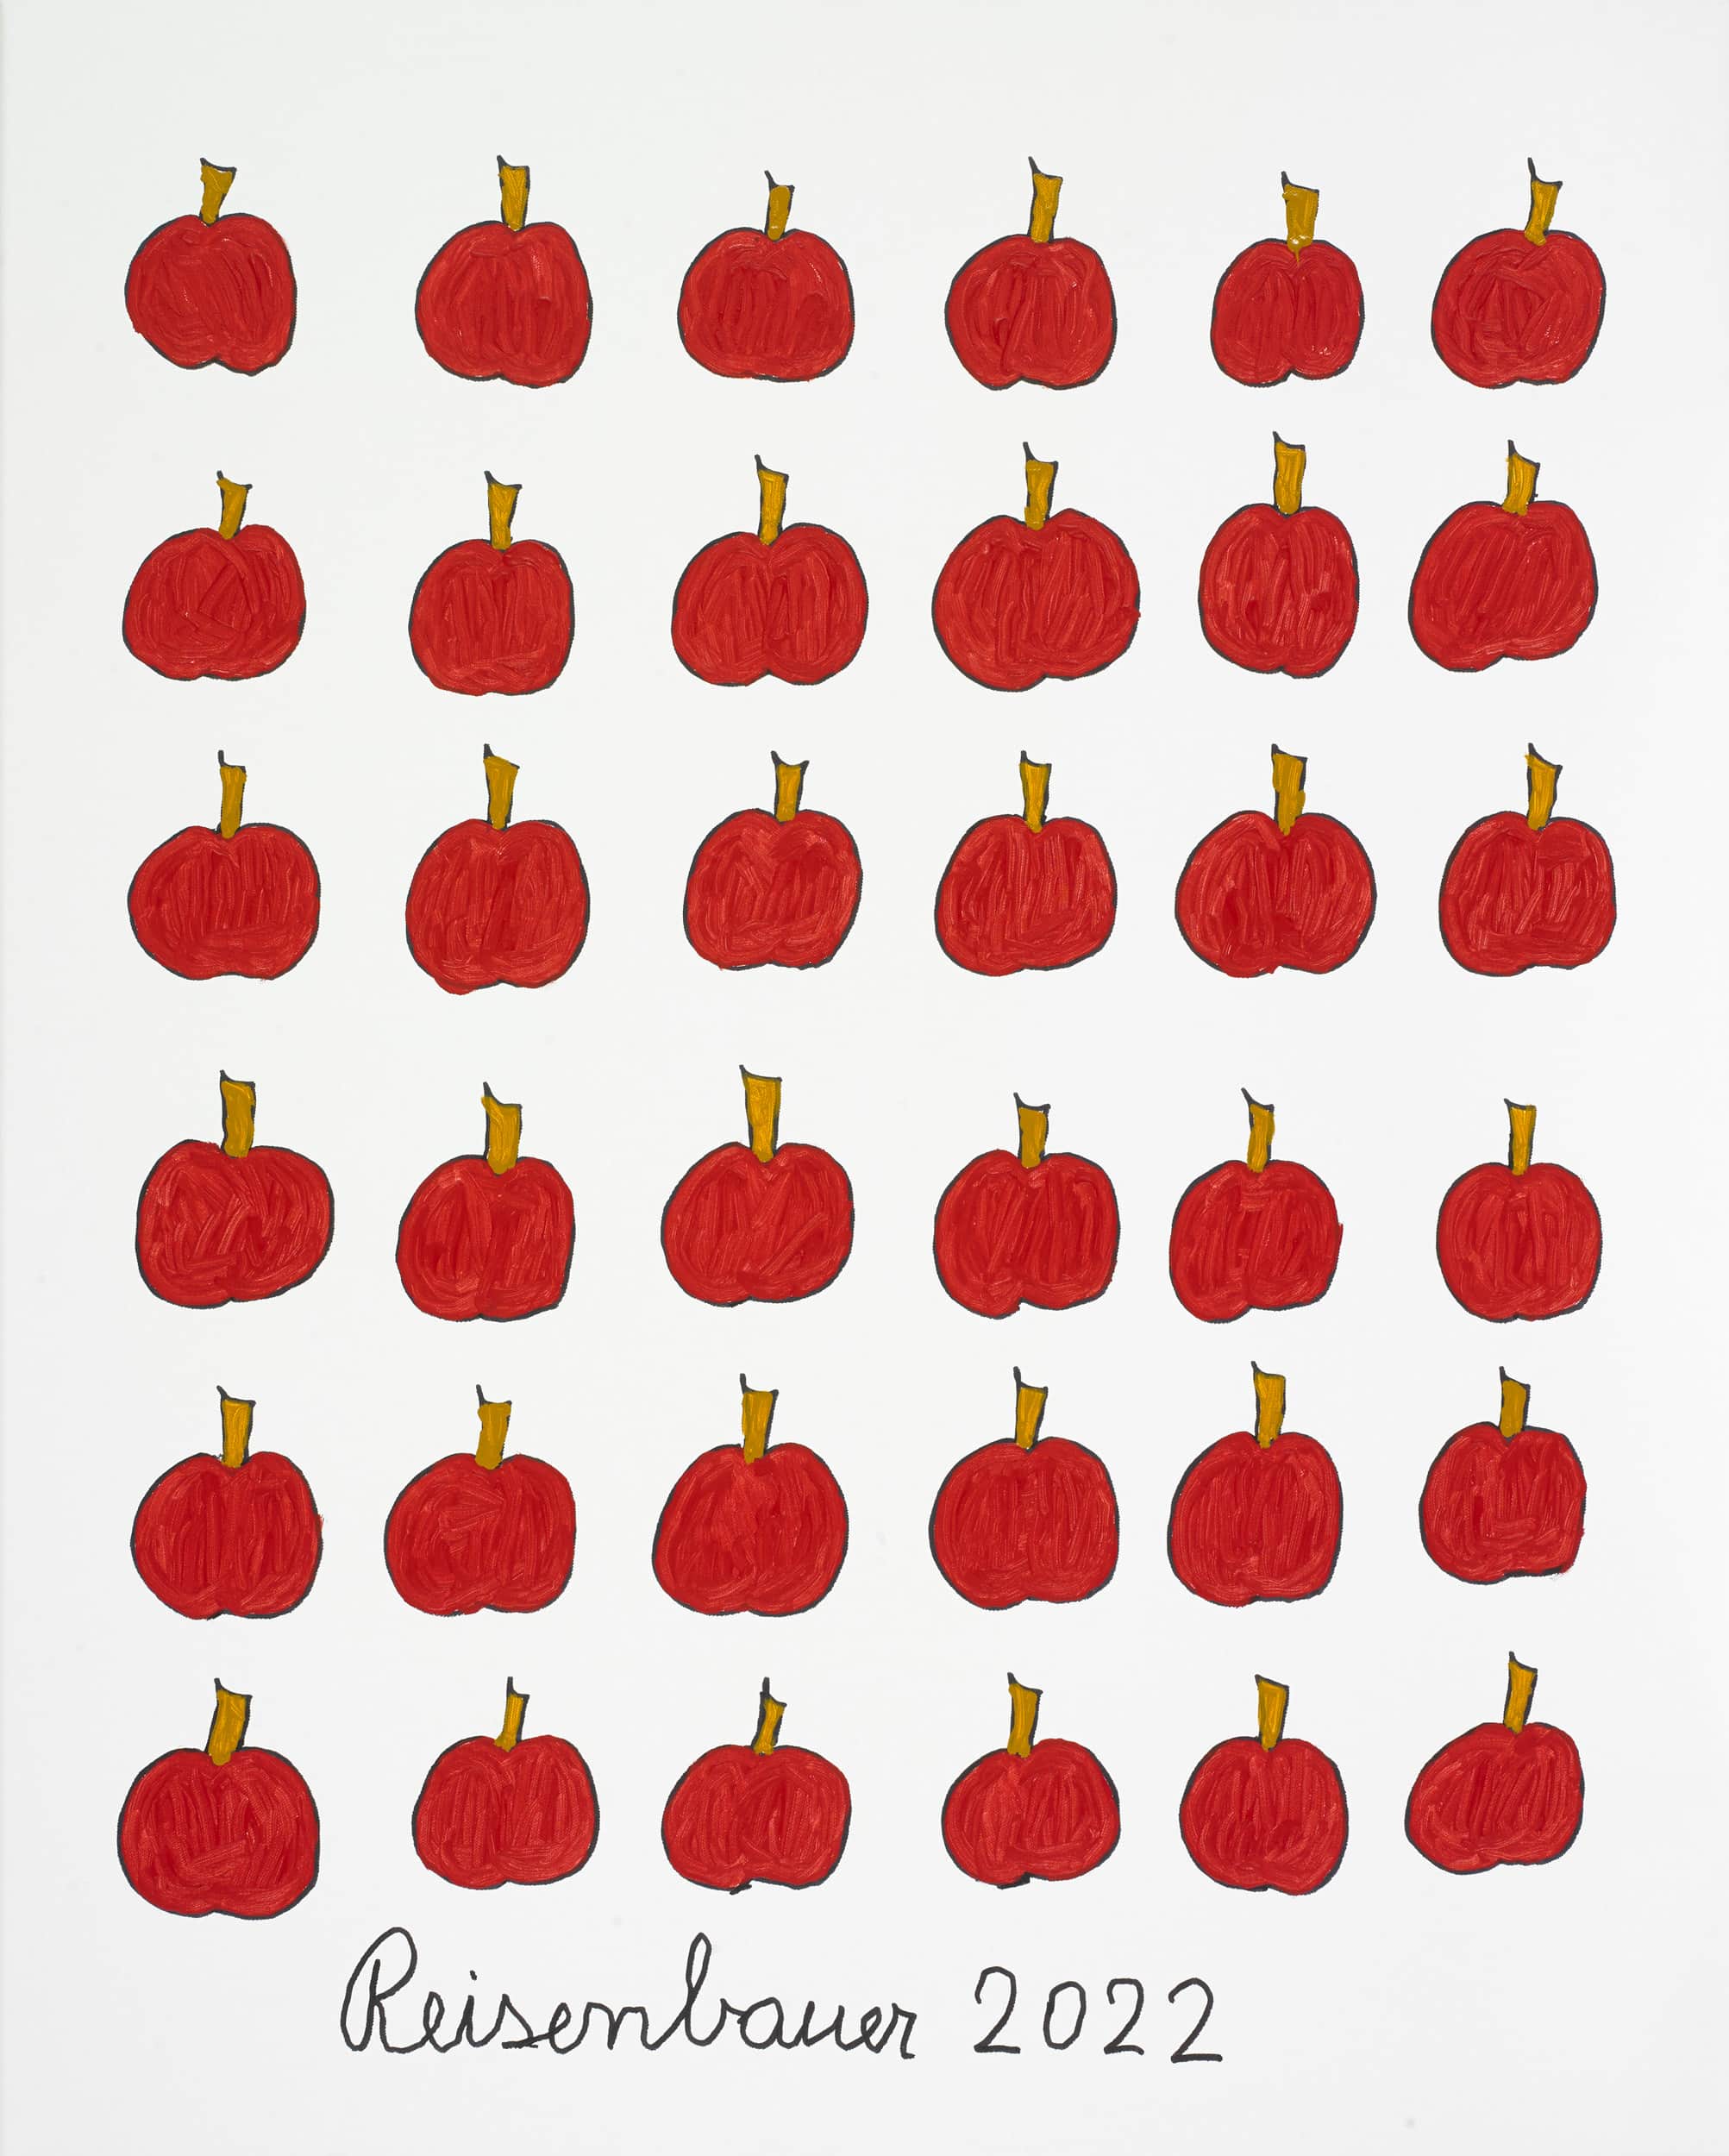 reisenbauer heinrich - Äpfel / Apples